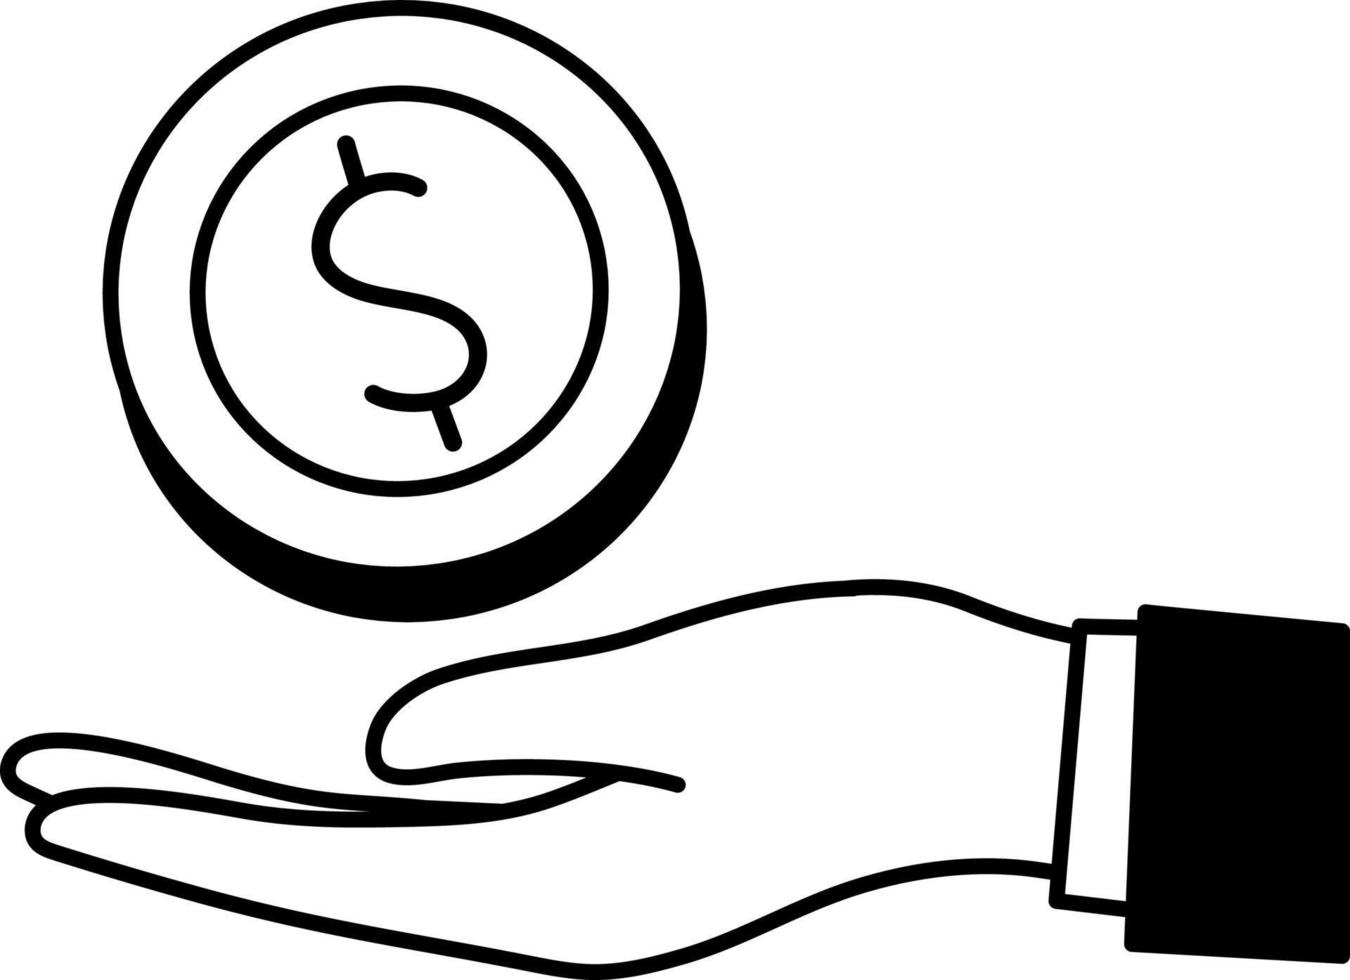 dinheiro moeda mão compensação lucro financeiro negócio comércio elemento ilustração semi-sólido preto e branco vetor